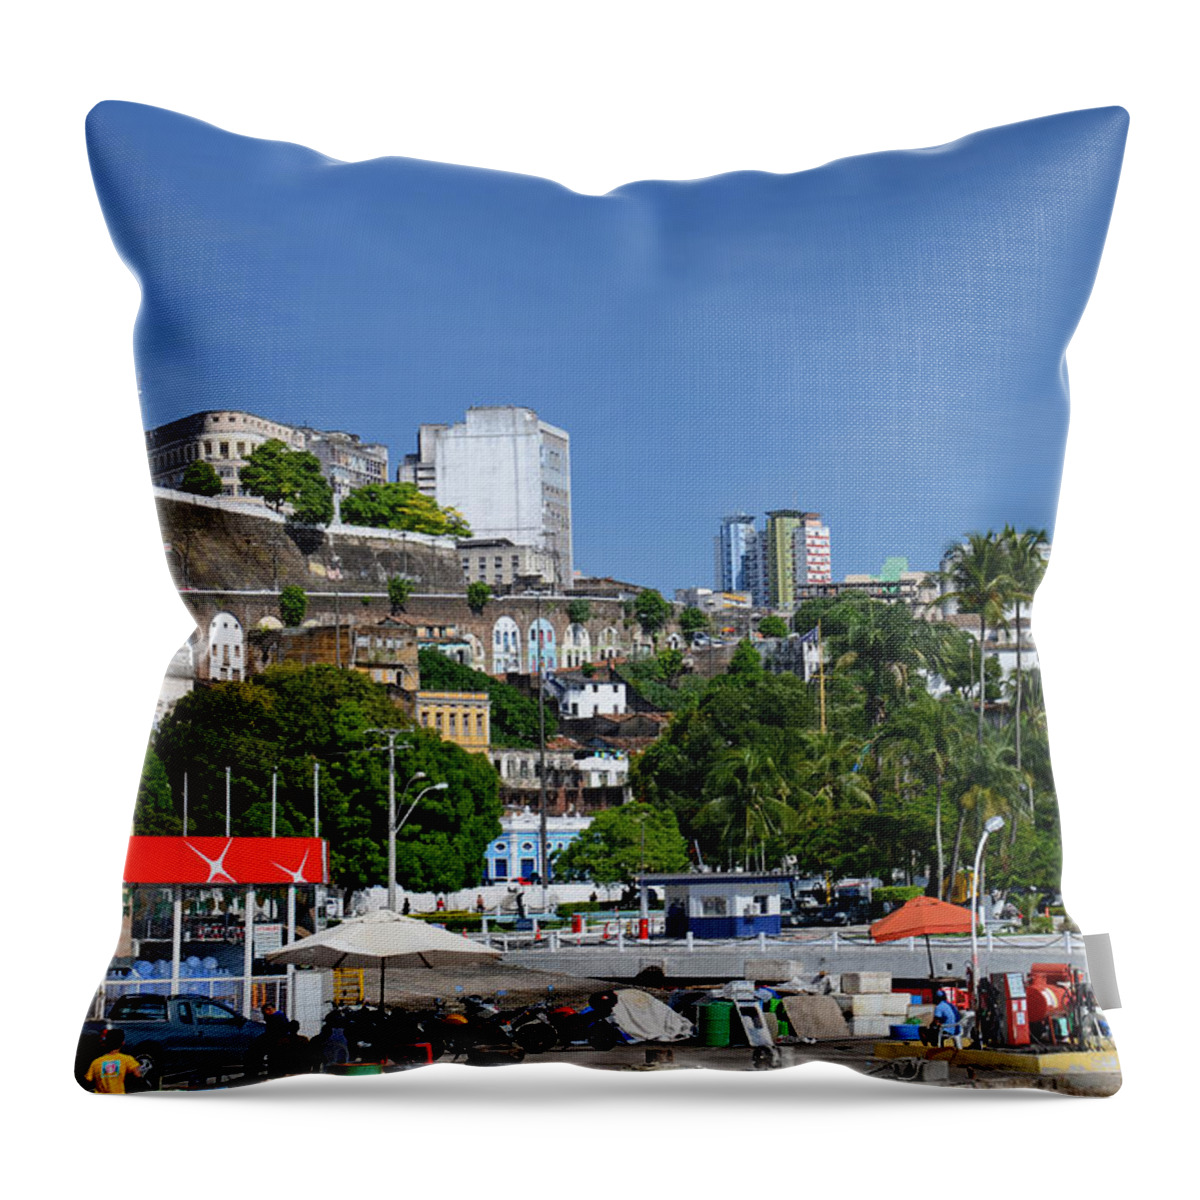 Salvador Throw Pillow featuring the photograph Harbor in Salvador da Bahia Brazil by Ralf Broskvar